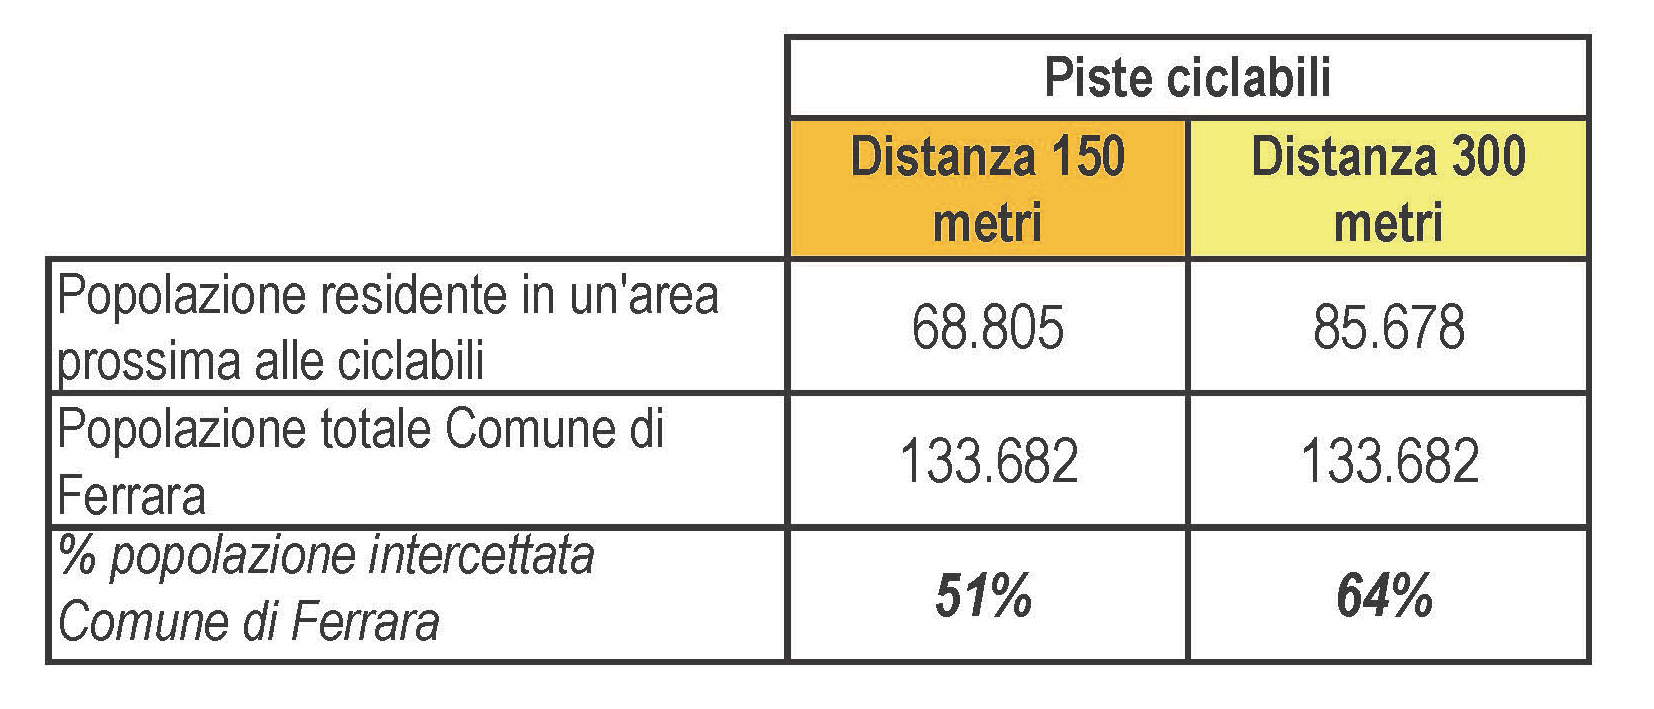 RETE CICLABILE E POPOLAZIONE INTERCETTATA Il 51% della popolazione residente nel Comune di Ferrara abita a meno di 150 metri da una pista ciclabile e